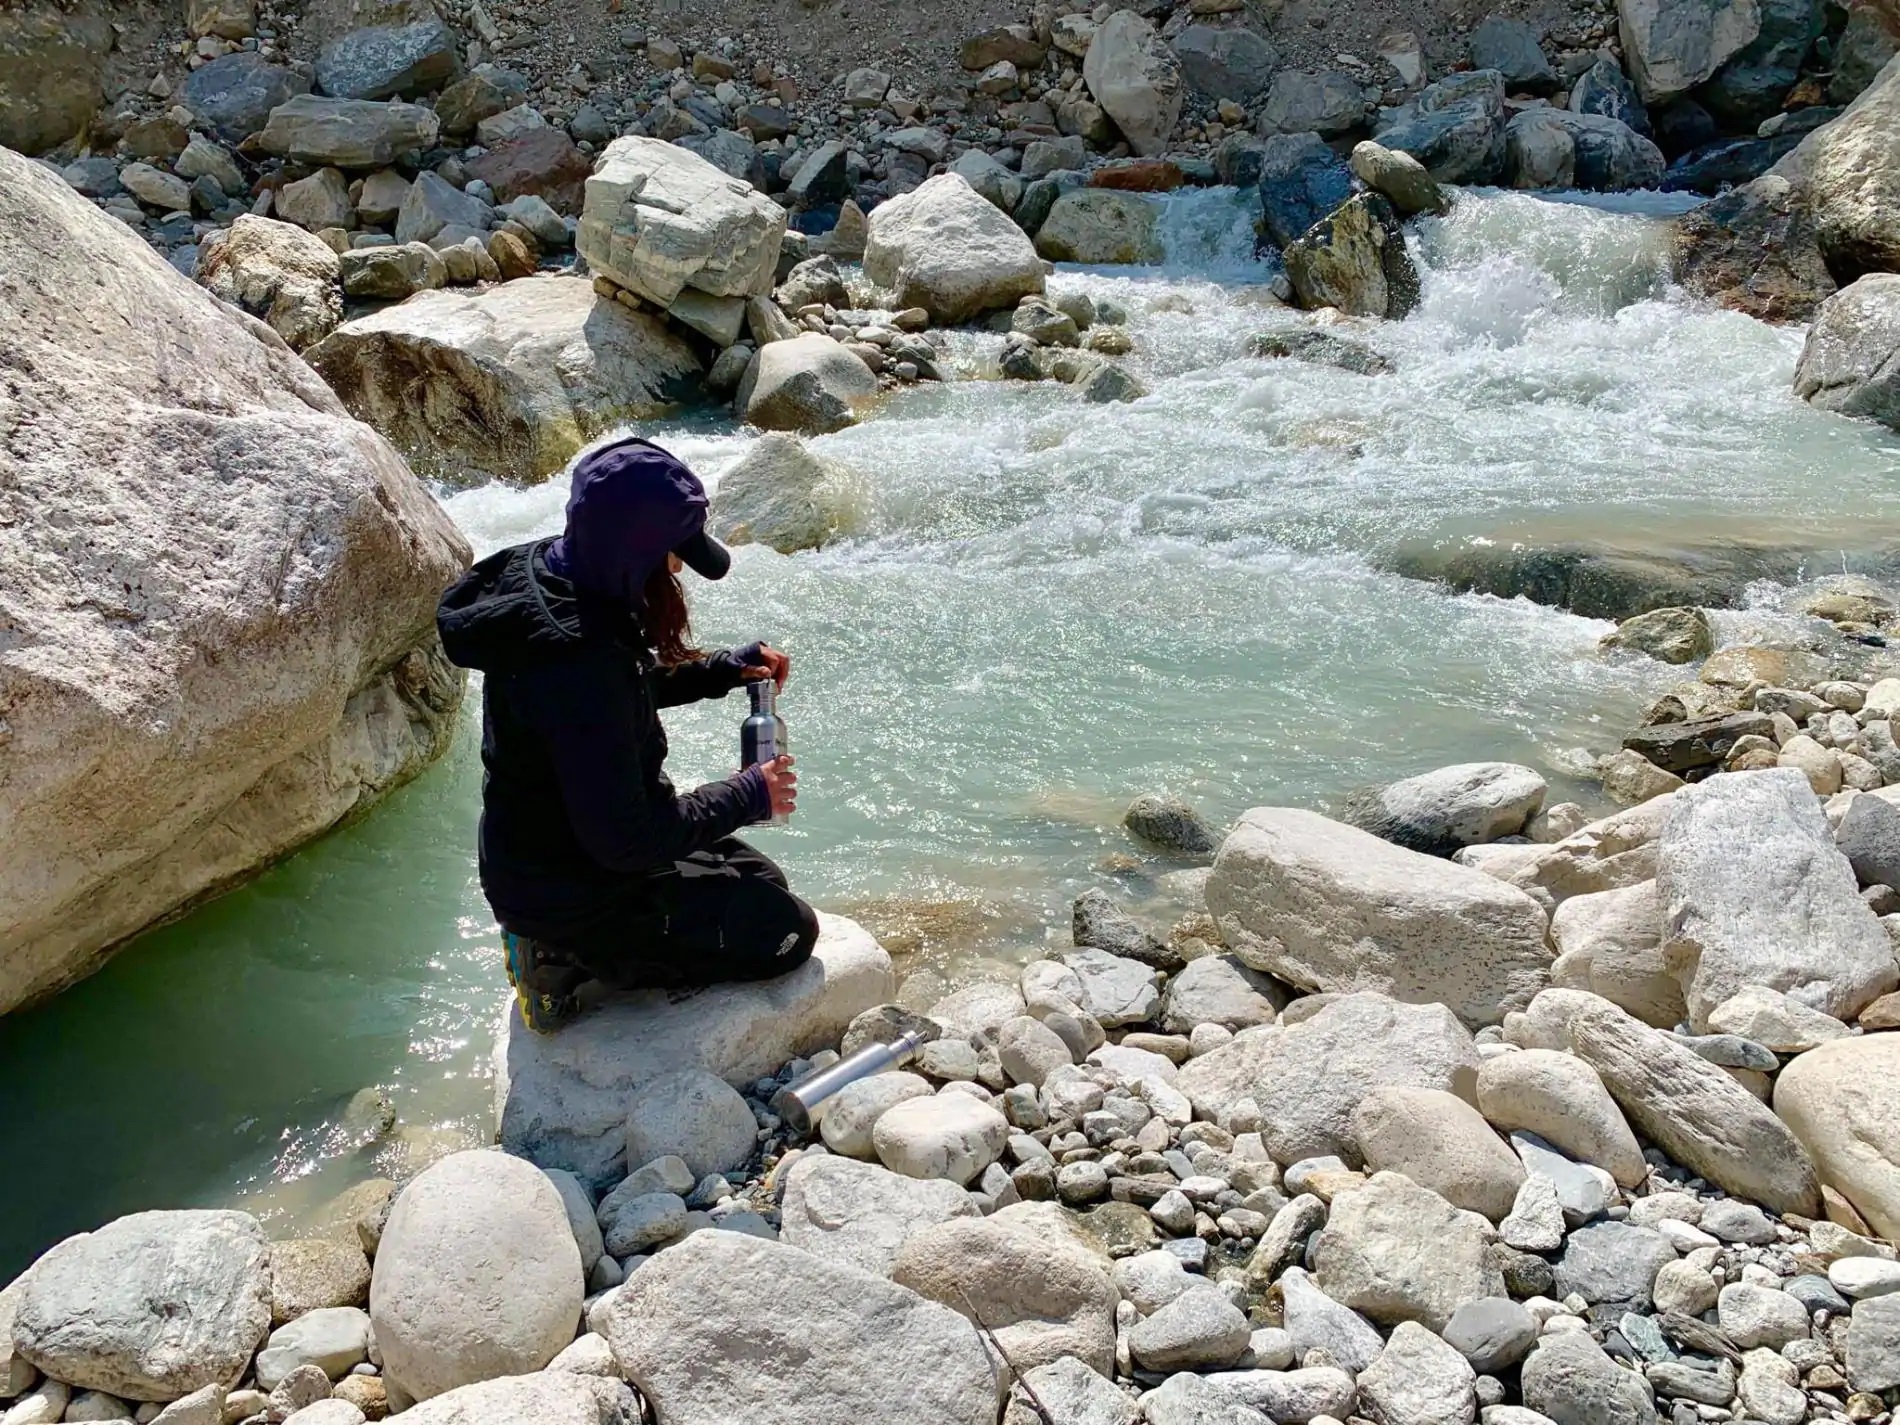 Хизер Клиффорд, климатолог из Университета штата Мэн, собирает речную воду к югу от деревни Фериче в Непале. Позже образец будет проверен на микропластик. Фото PAUL MAYEWSKI, NATIONAL GEOGRAPHIC